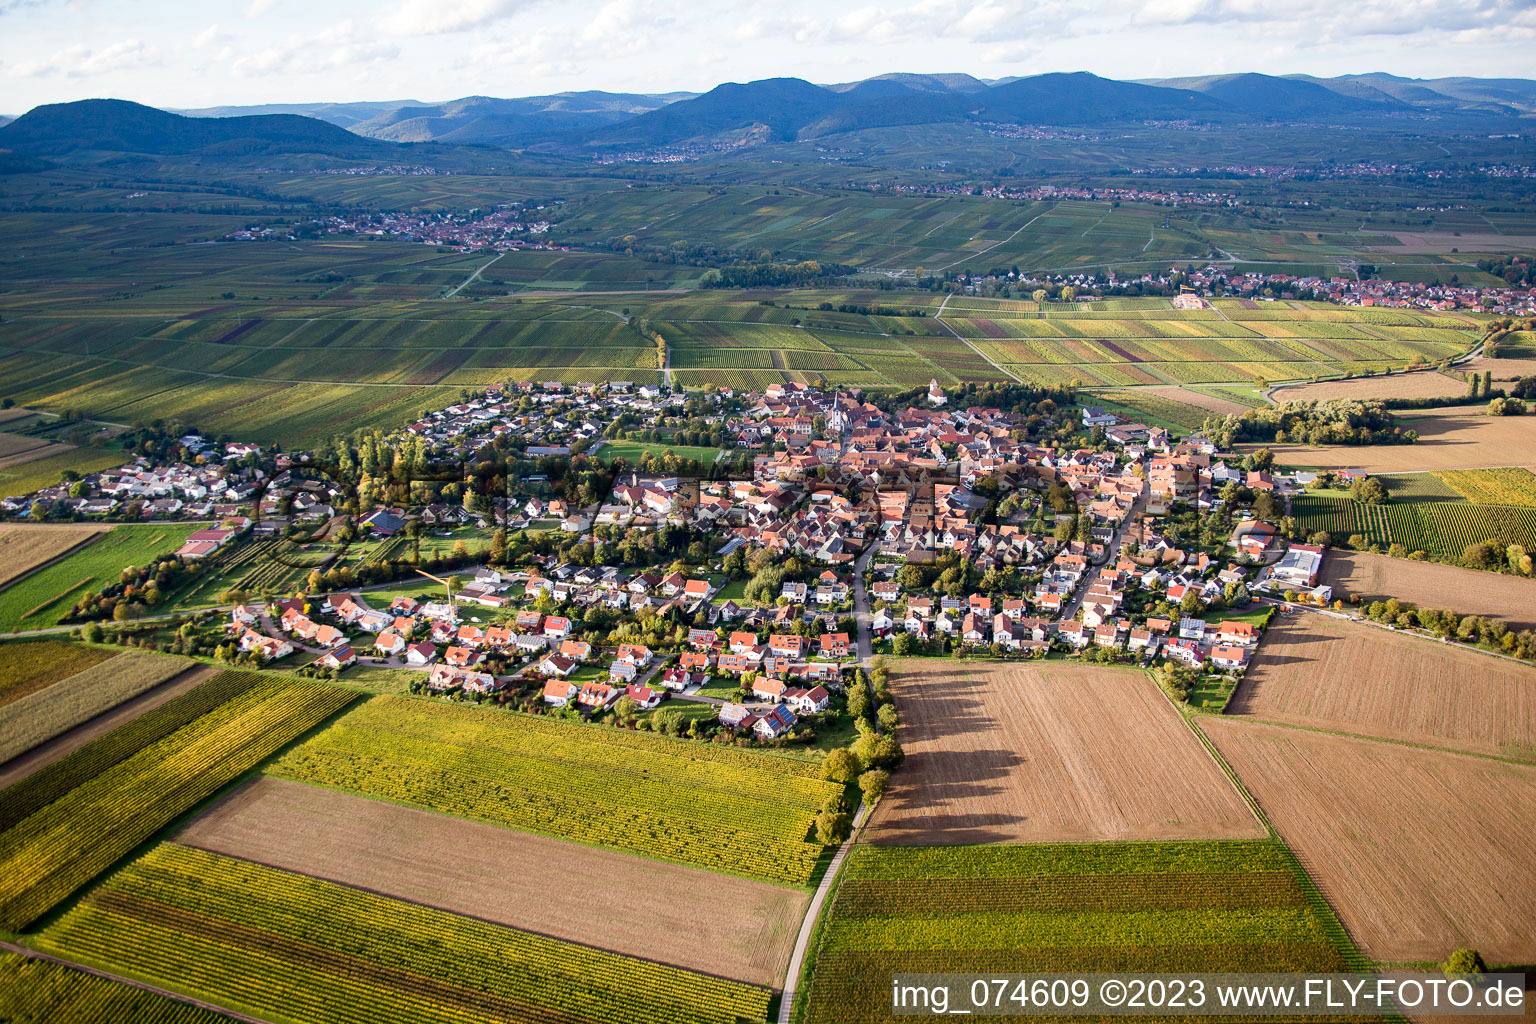 District Mörzheim in Landau in der Pfalz in the state Rhineland-Palatinate, Germany from above